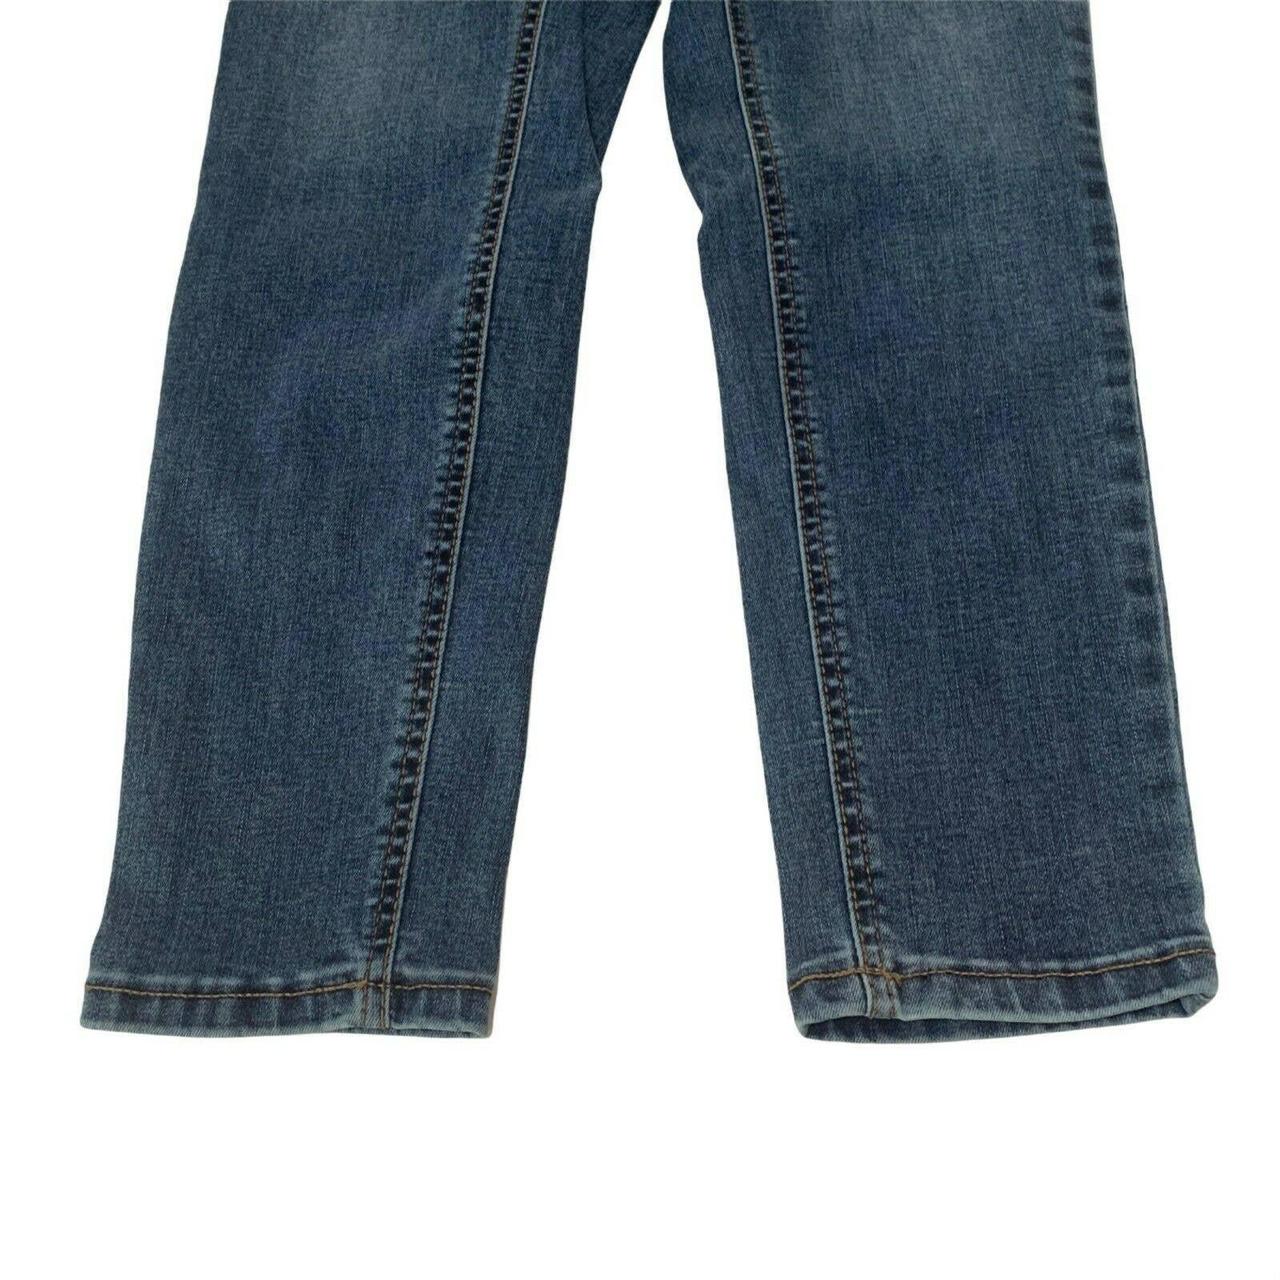 Boundaries denim jeggings / leggings / skinny jeans - Depop